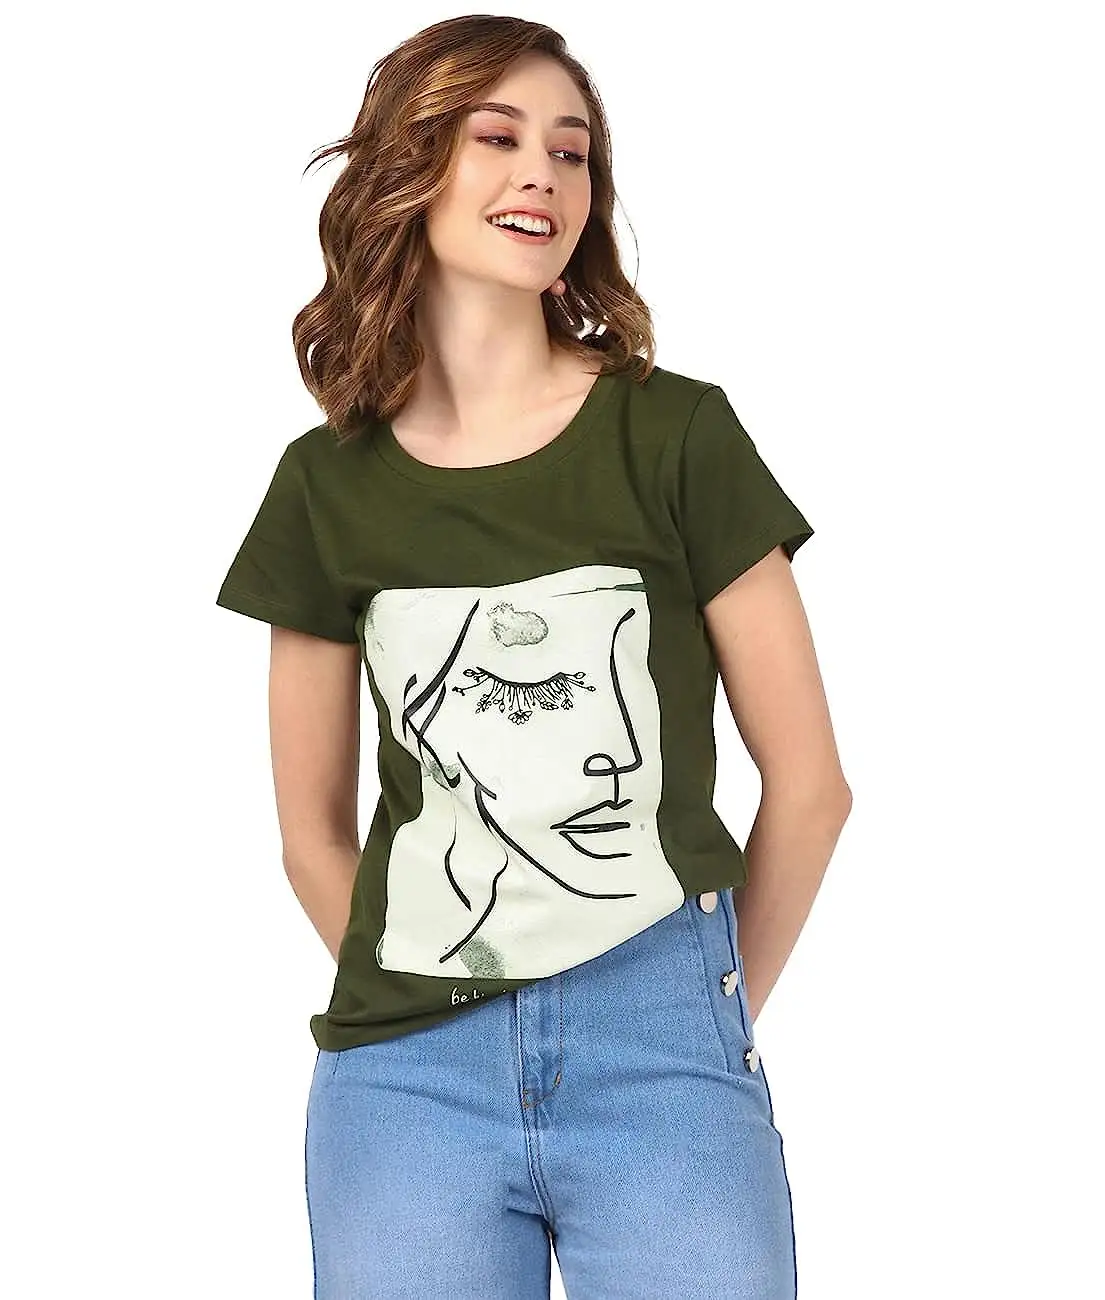 Stampa di design artistico femminile con testo nero clr T-shirt in misto puro cotone per donna manica corta corta in tessuto femminile dall'aspetto carino